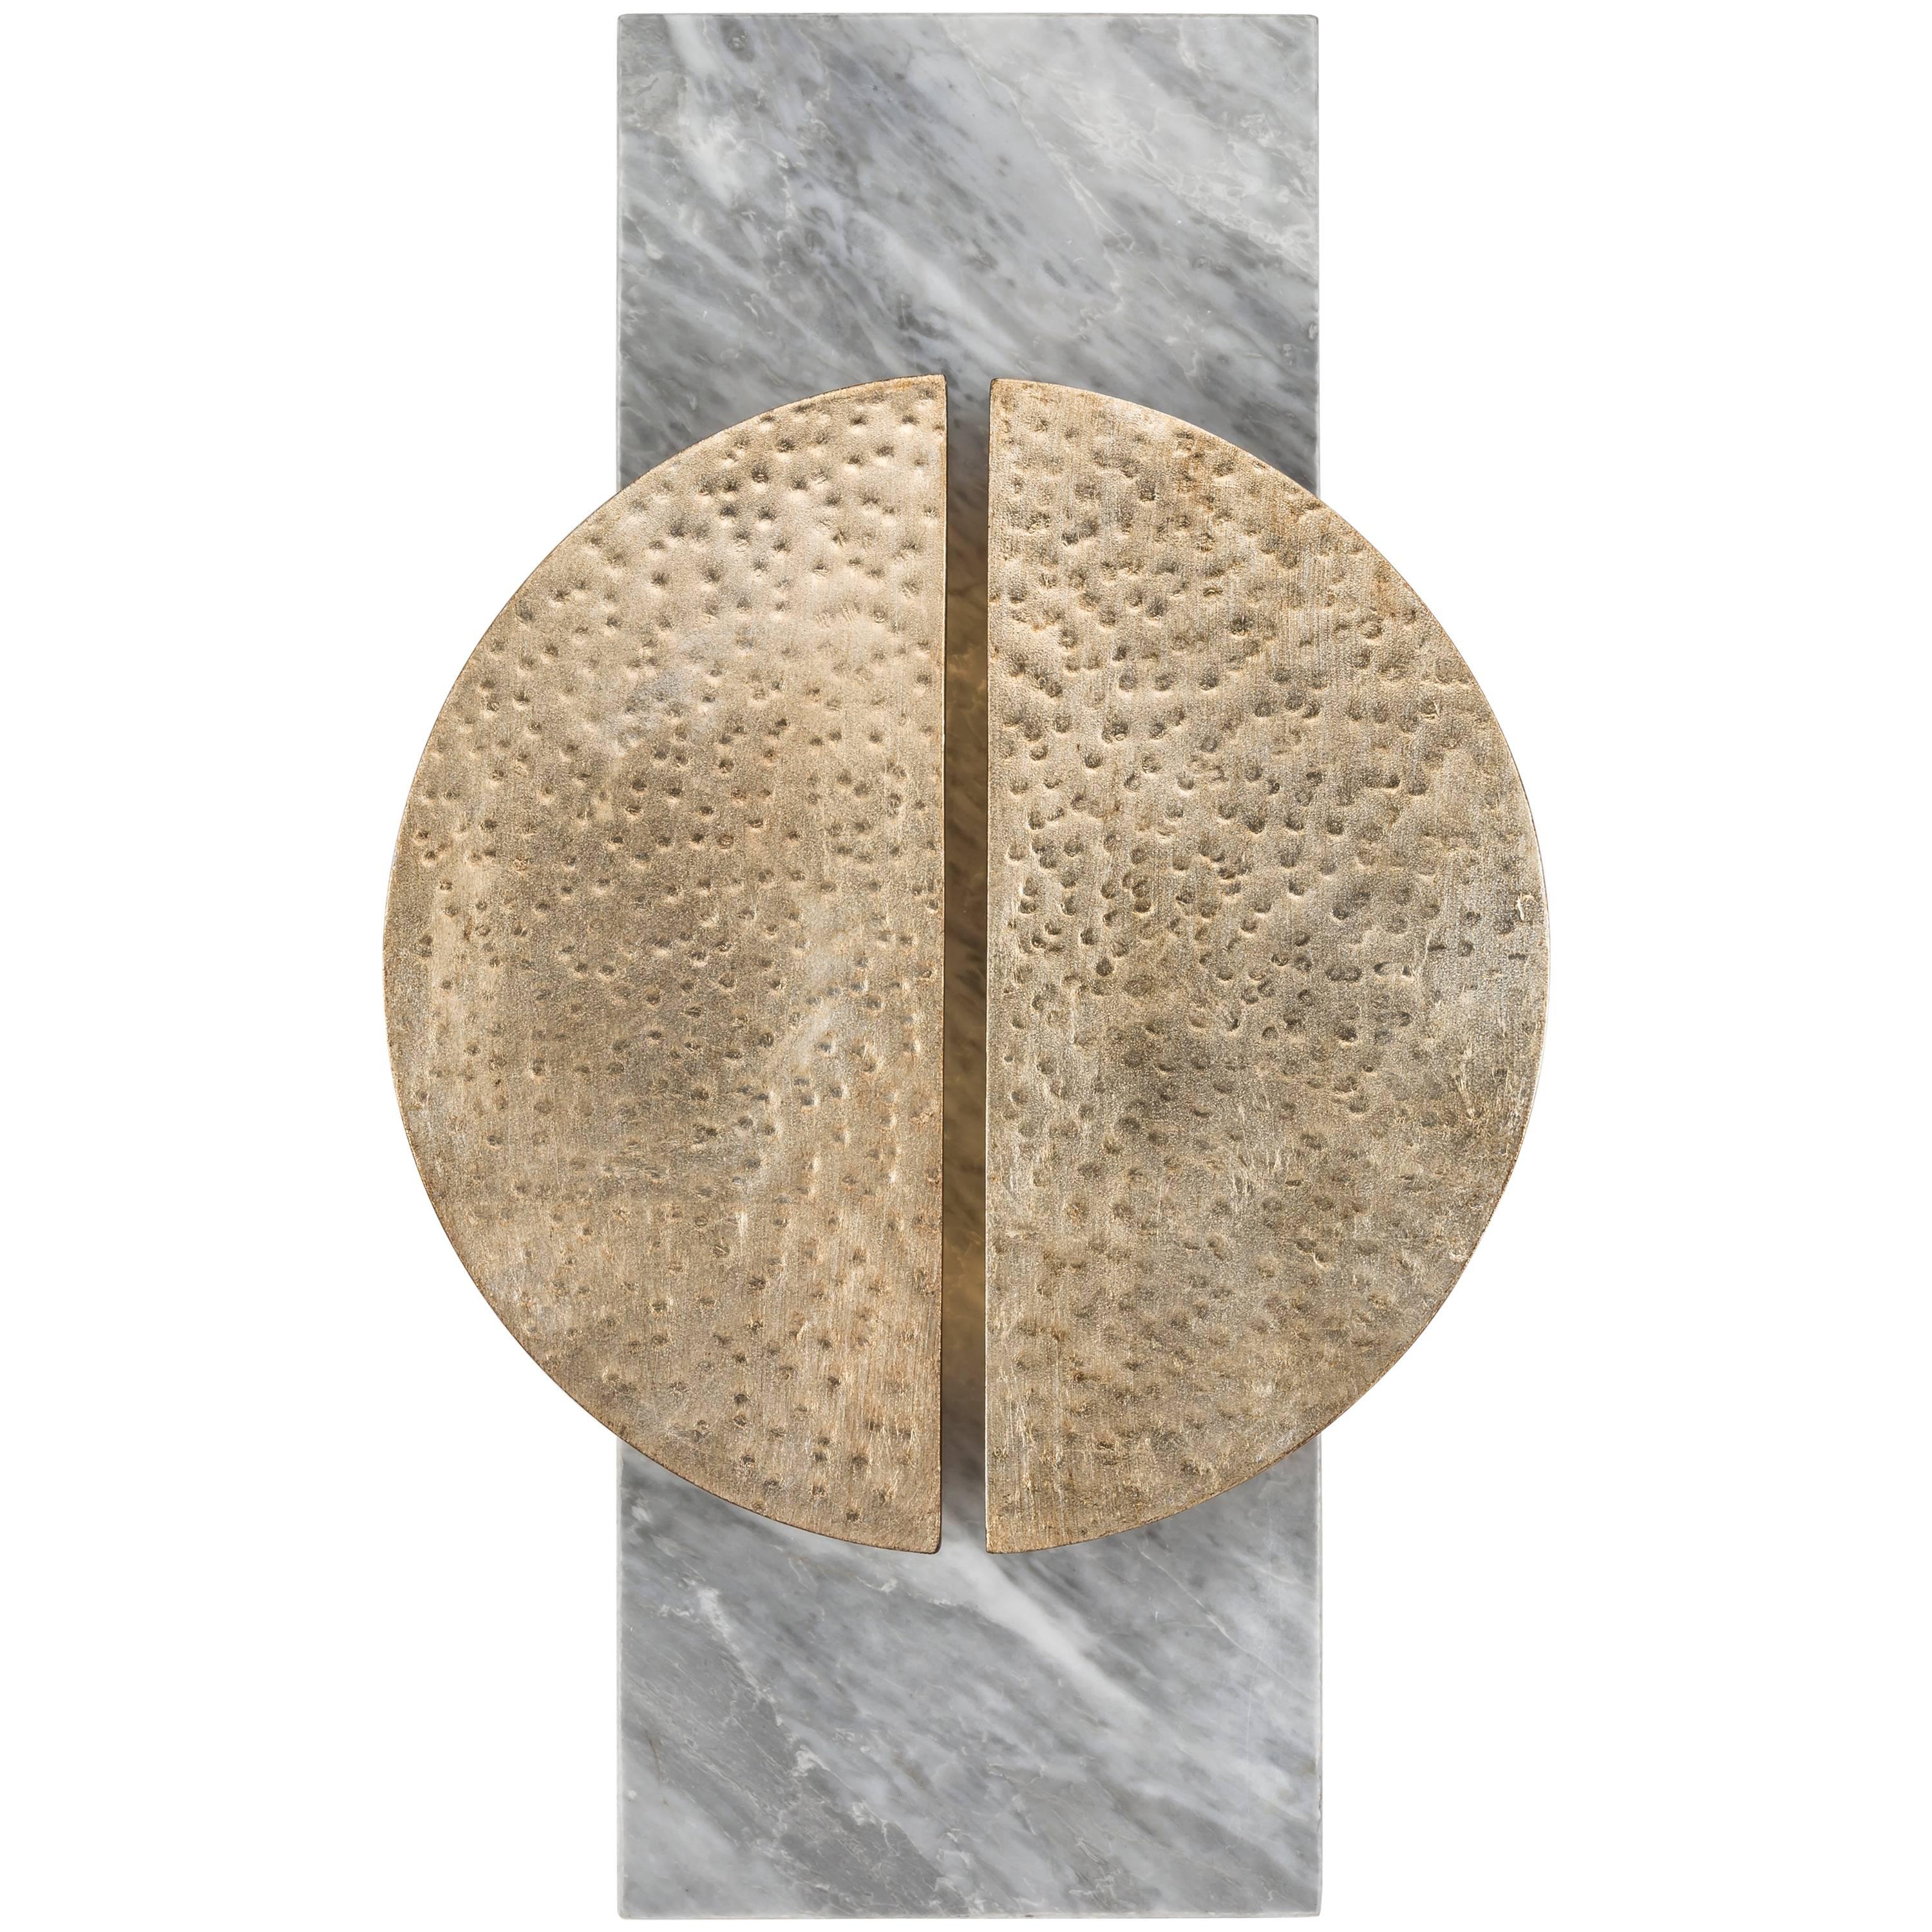 HALO SCONCE – Moderner handgeschmiedeter Wandleuchter mit Blättern auf einem Teller aus Carrara-Marmor